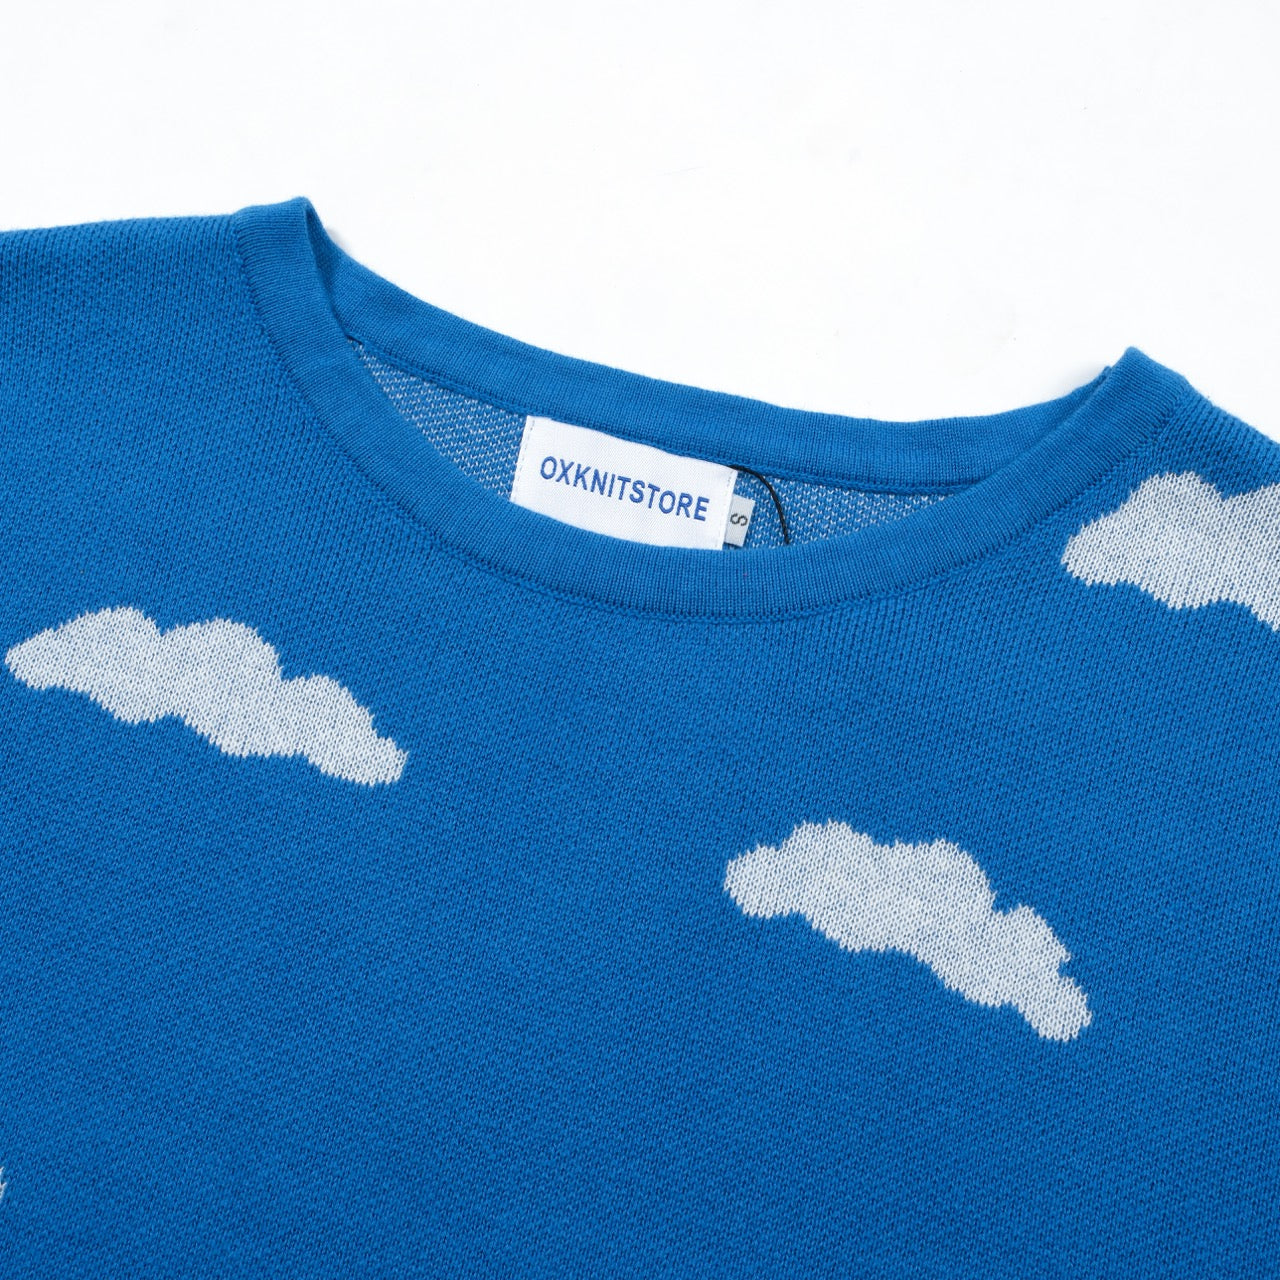 Γυναικεία πλεκτά μπλουζάκια της δεκαετίας του 1960 Blue Sky και White Clouds